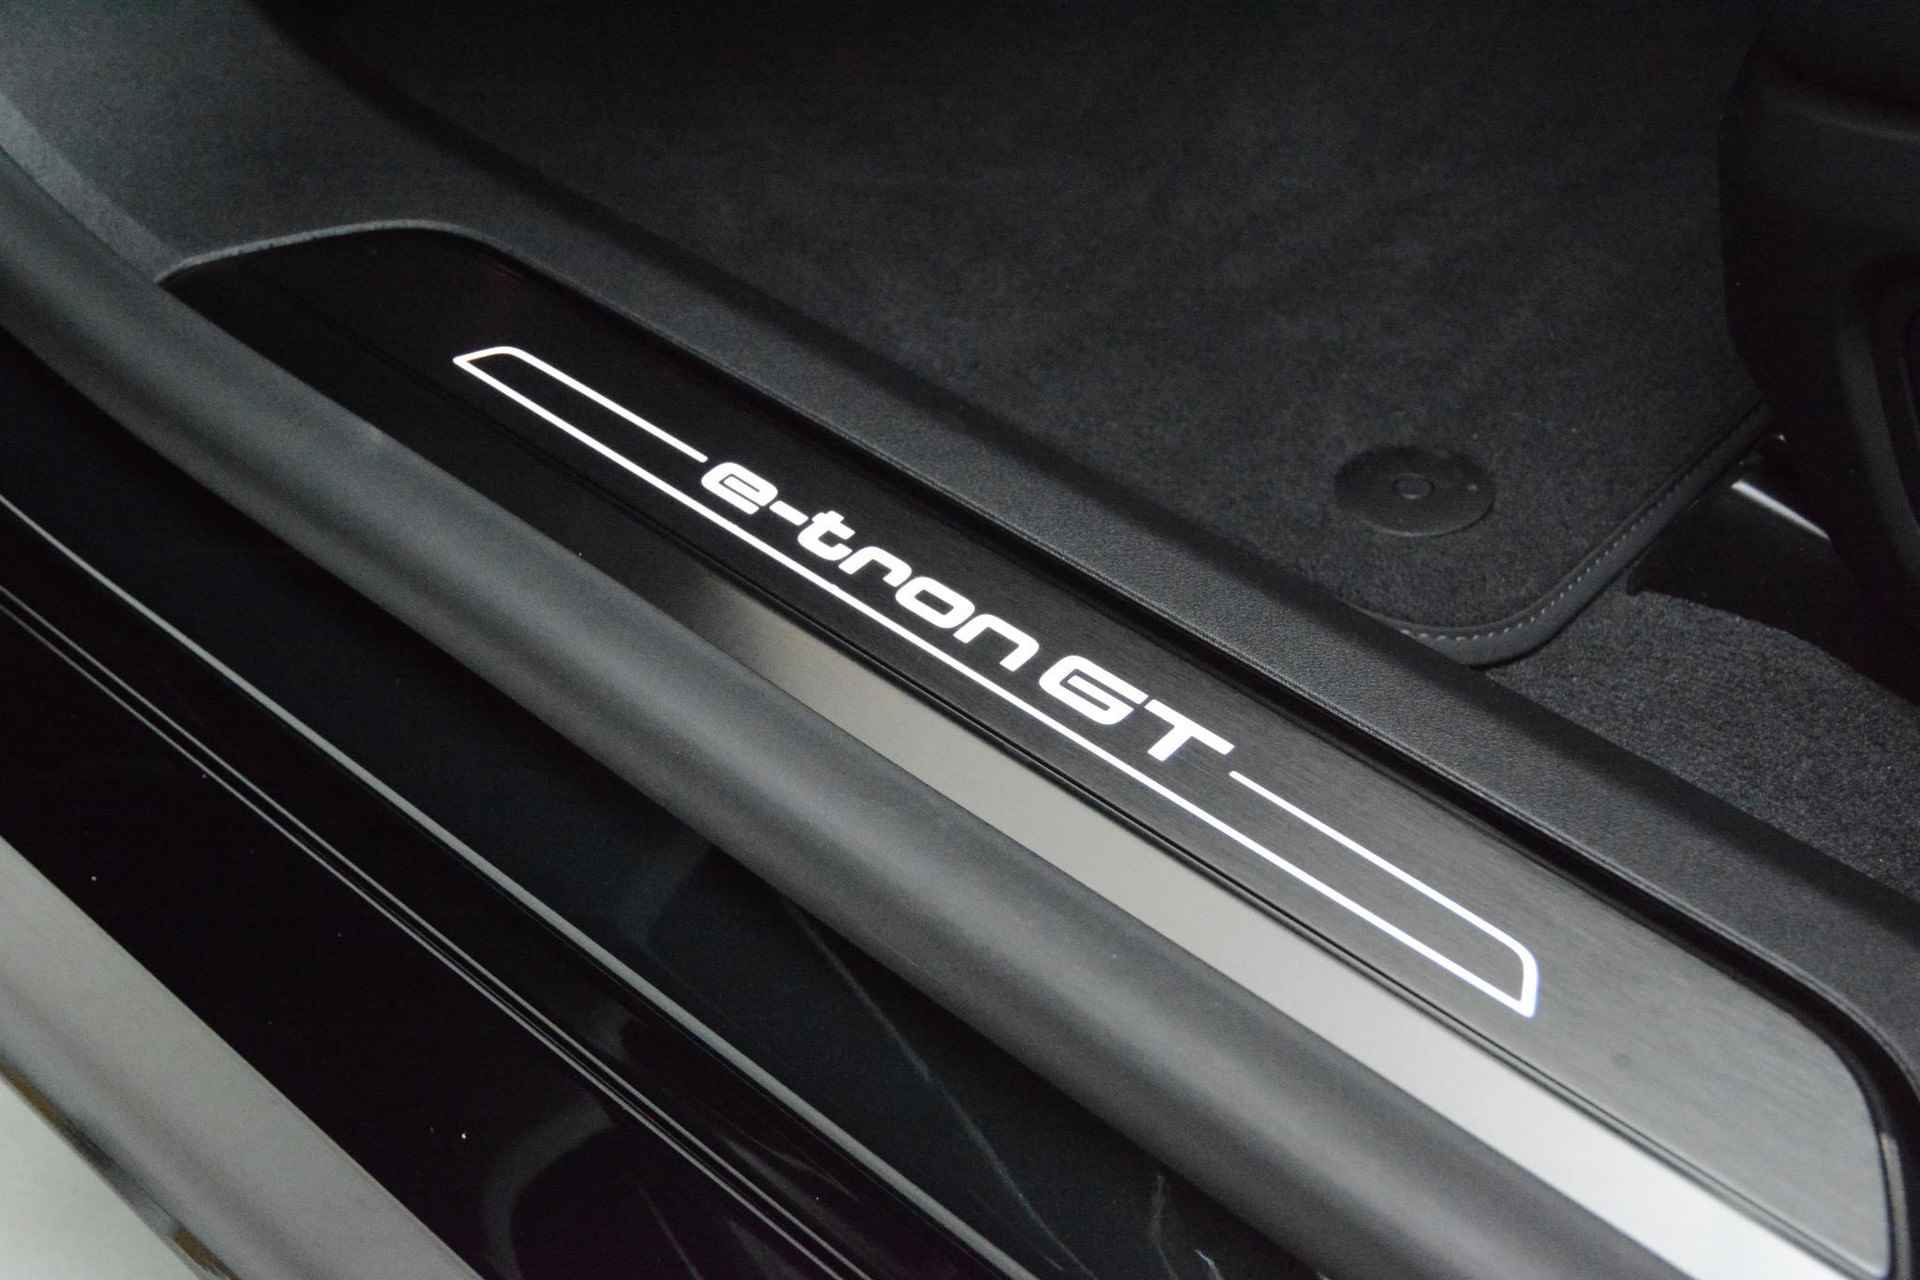 Audi e-tron GT GT Competition 93 kWh 476 PK | Nieuw | NU VAN € 143.900,00 VOOR € 123.900,00!!!! | UNIEKE KLEUR TIEFGRUN ENIGE IN NL!!! | Navigatie | Maxtrix-Laser koplampen | 360 camera | Autonome parkeerfunctie | Dynamische vierwielbesturing | Dodehoek detectie | Glazen panoramadak | Head-up display | Dynamiekpakket plus | Audi virtual cockpit plus | Stoelverwarming voor en achter | Lichtpakket plus ambient light | Optiekpakket zwart plus - 11/30